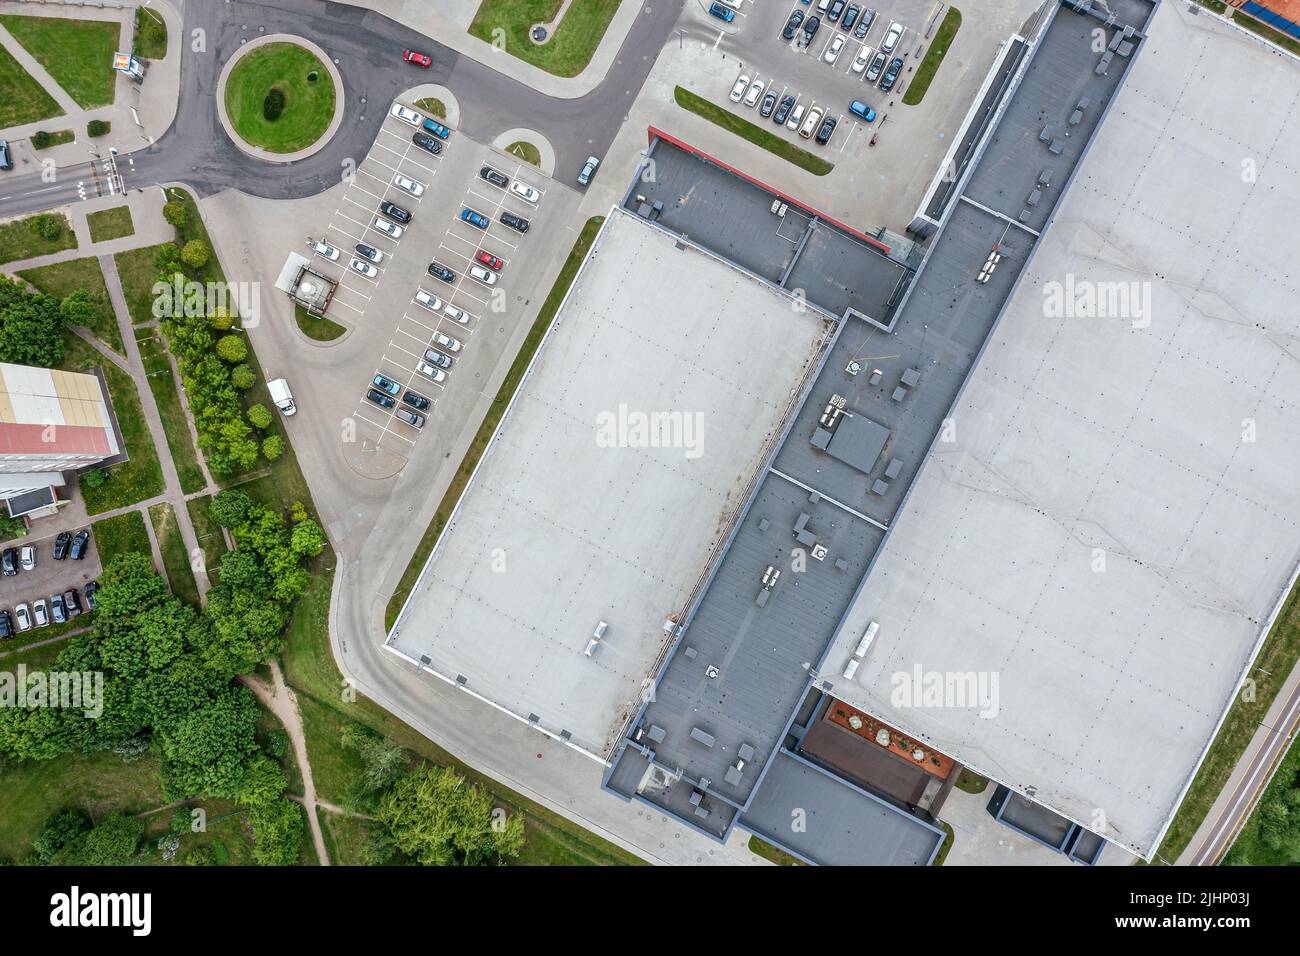 edificio industrial con parking en zona residencial. vista aérea desde el avión. Foto de stock